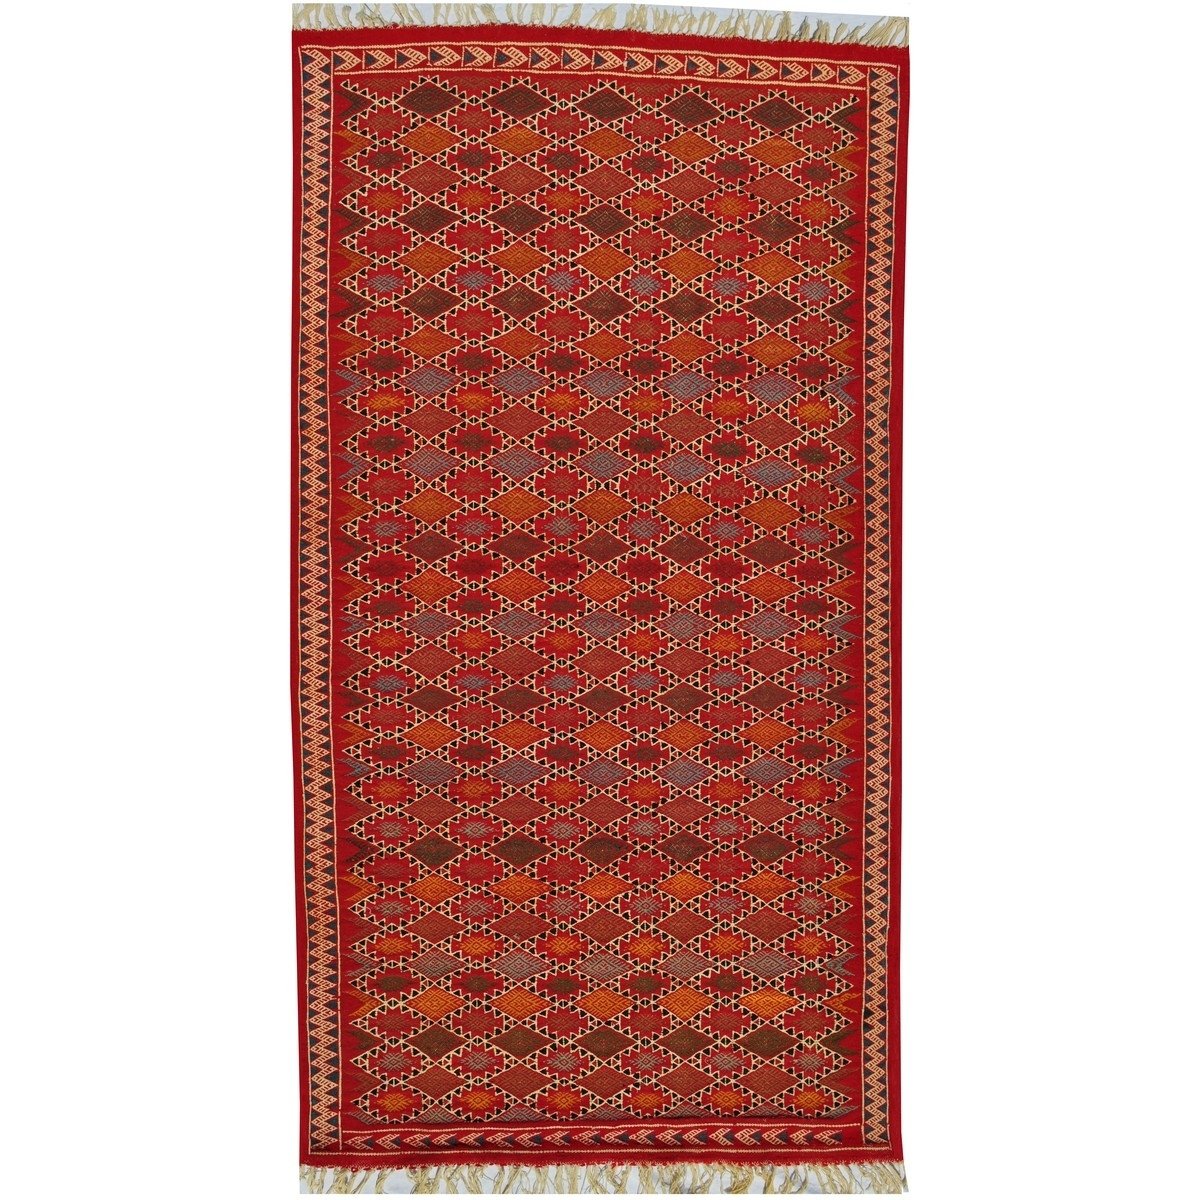 Tapete berbere Tapete Kilim Sultan 100x205 Multicor (Tecidos à mão, Lã, Tunísia) Tapete tunisiano kilim, estilo marroquino. Tape